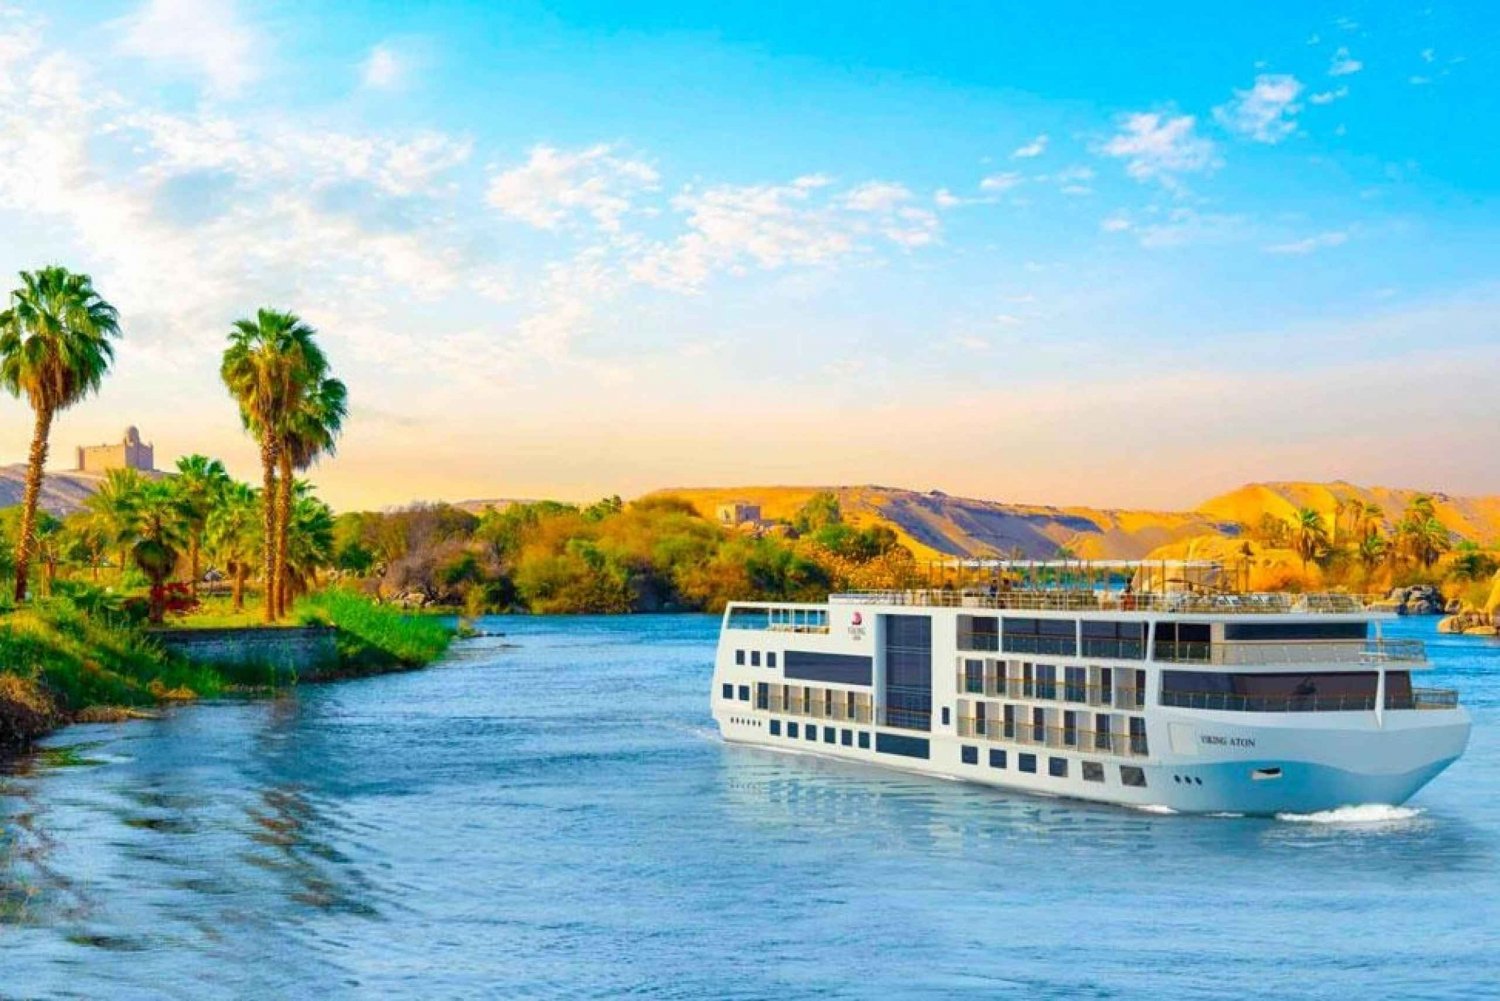 Fra Kairo: 3-netters Nile Cruise Luxor, Aswan med fly